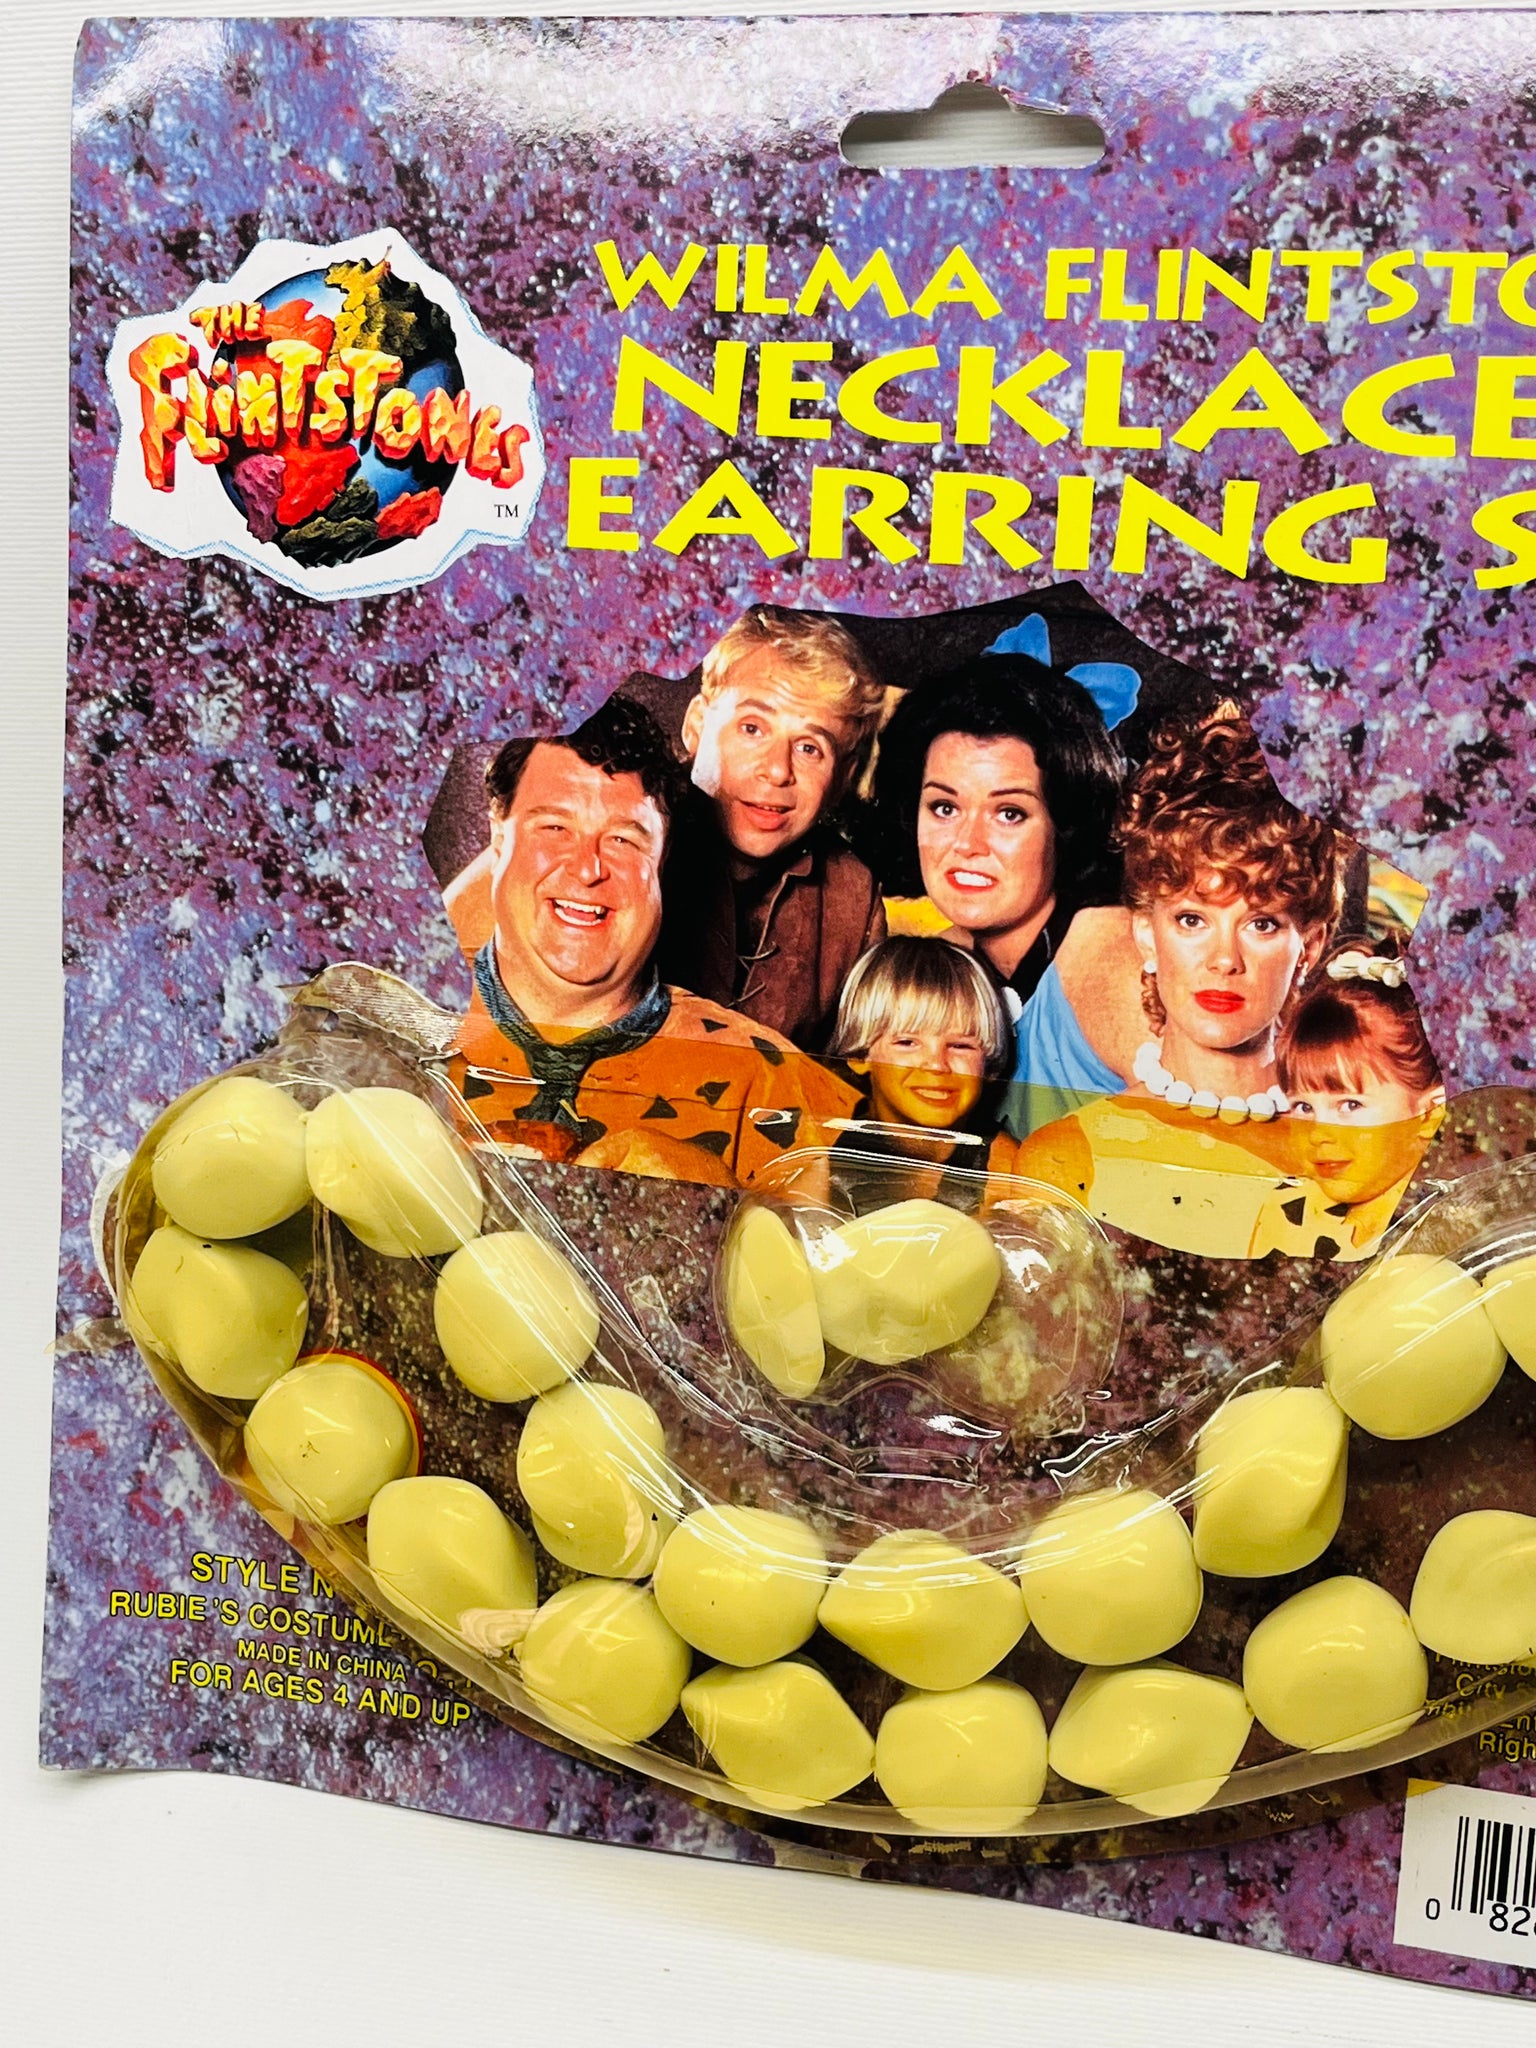 Wilma Flintstone Necklace & Earring Set